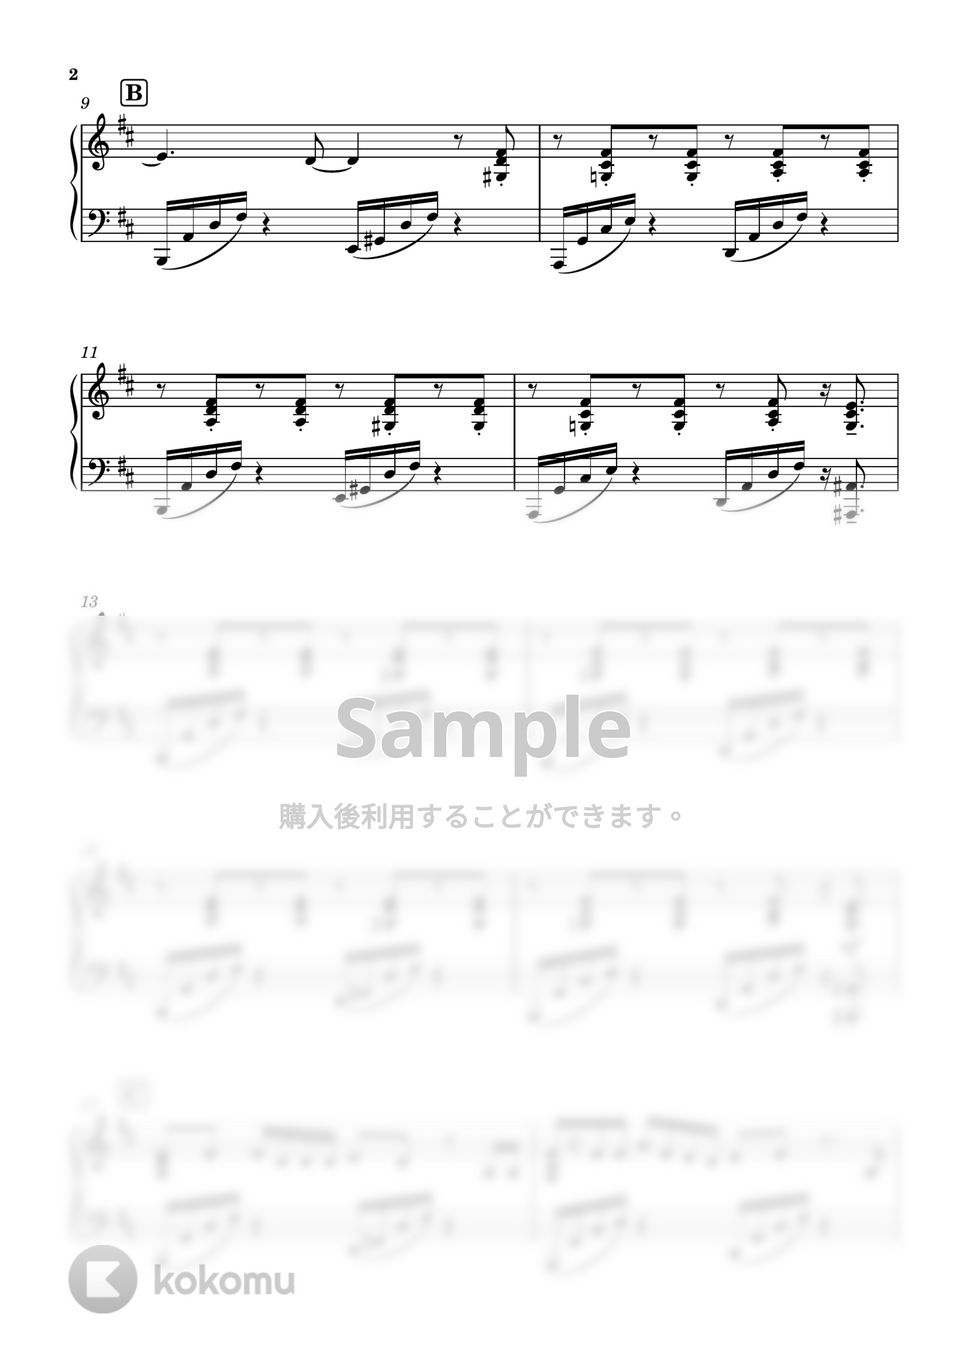 ヨルシカ - ブレーメン (ピアノソロ / 上級) by SuperMomoFactory